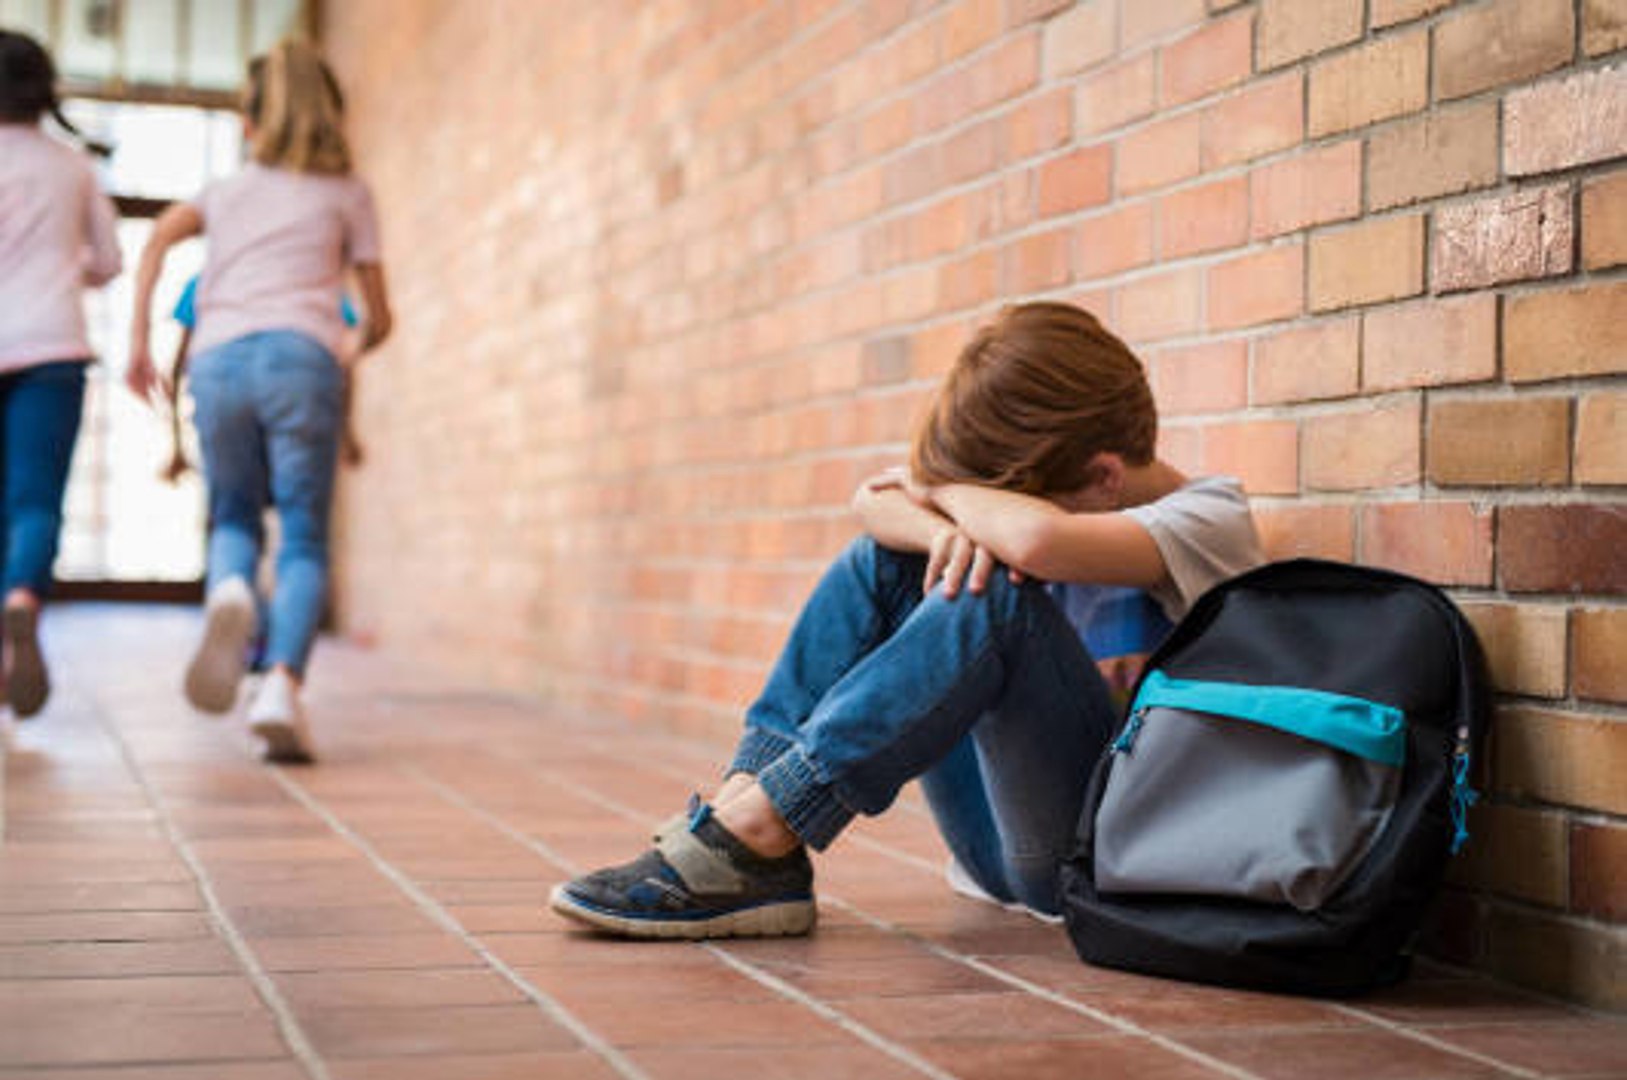 كيف تعرفين إن كان أبنك يتعرض للتنمر في المدرسة؟